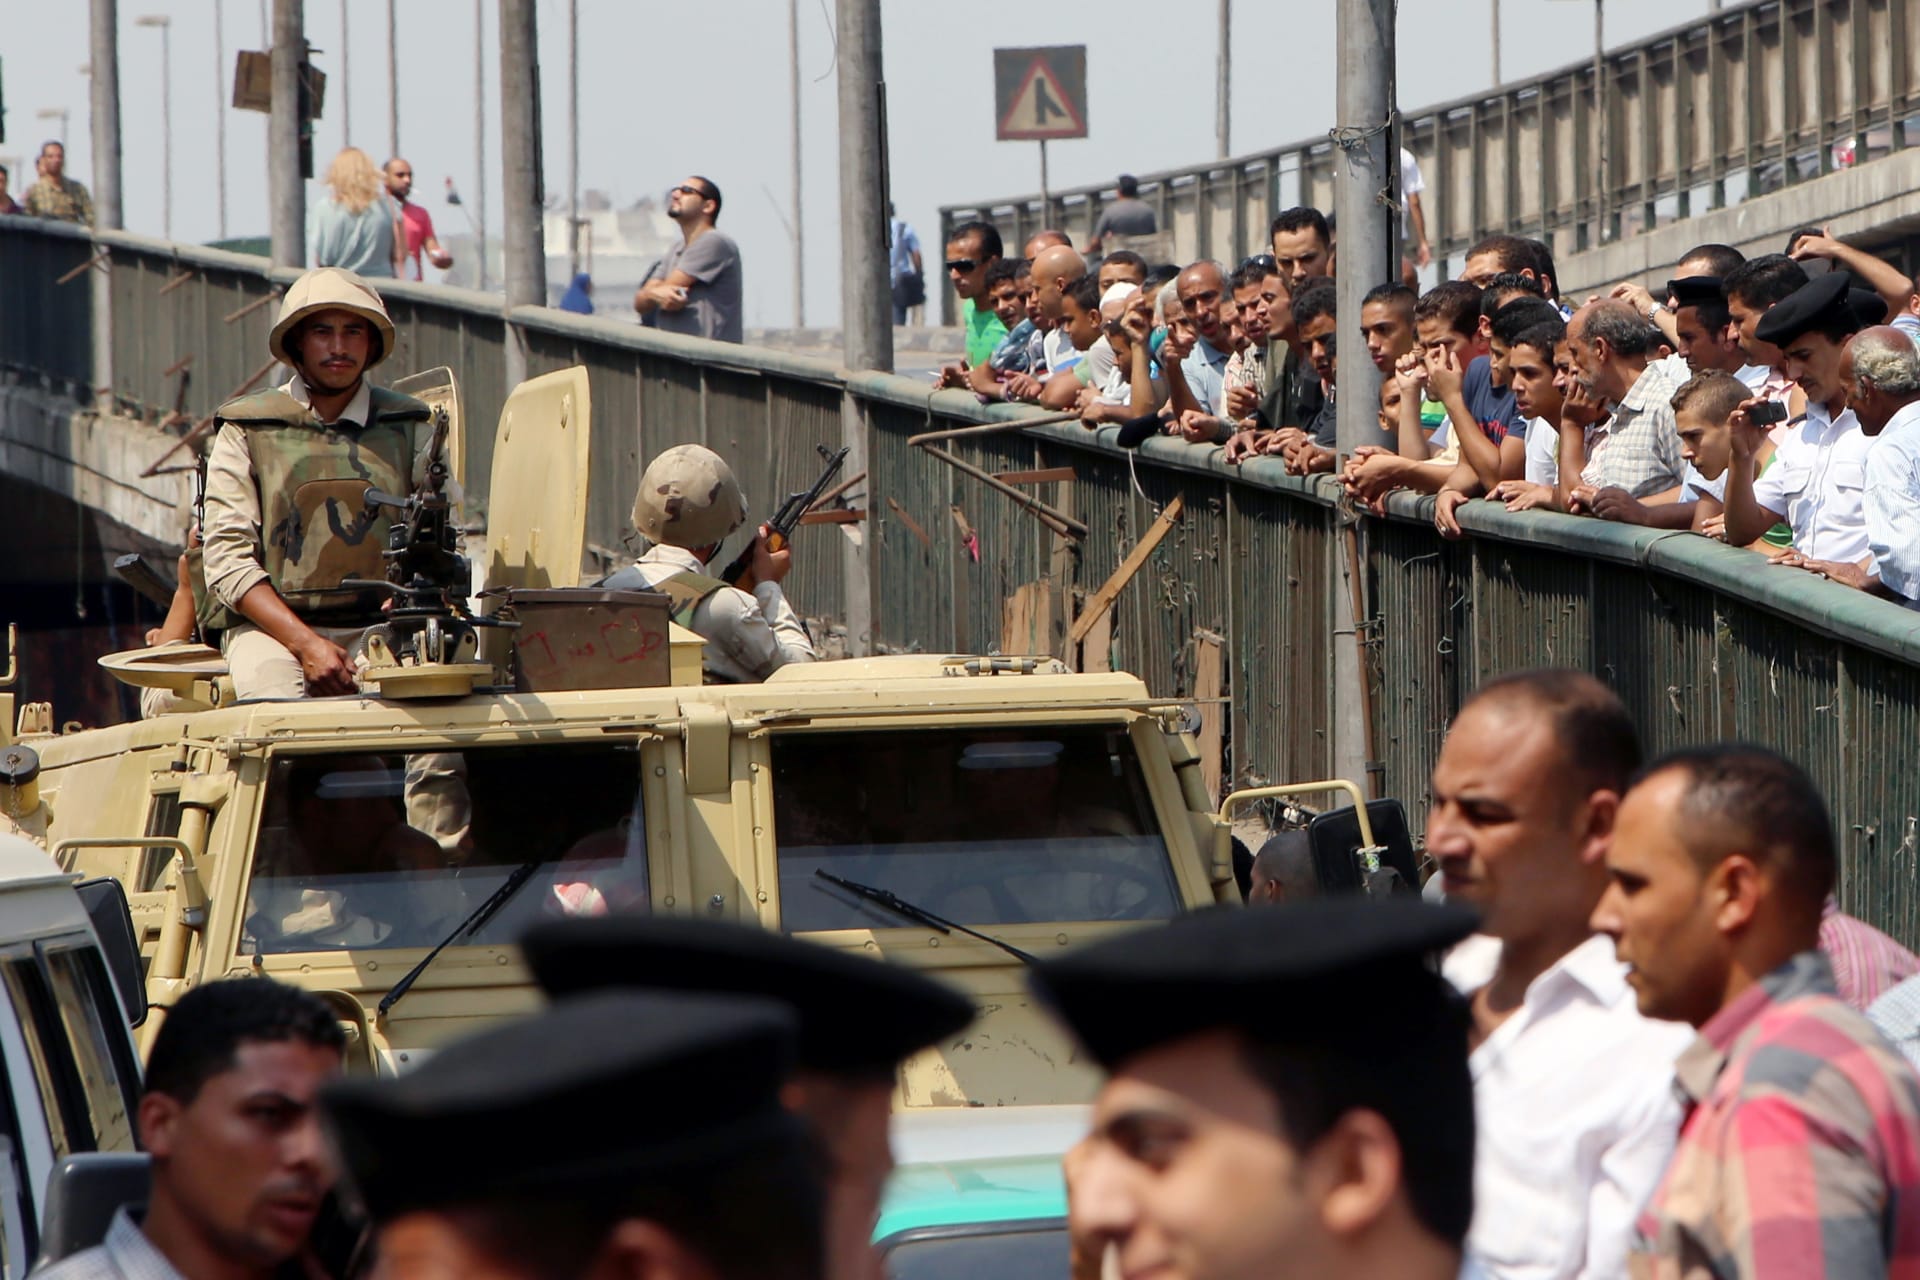 البرلمان يوافق على قانون "تحصين" قادة الجيش المصري.. ونواب معارضون يرفضونه